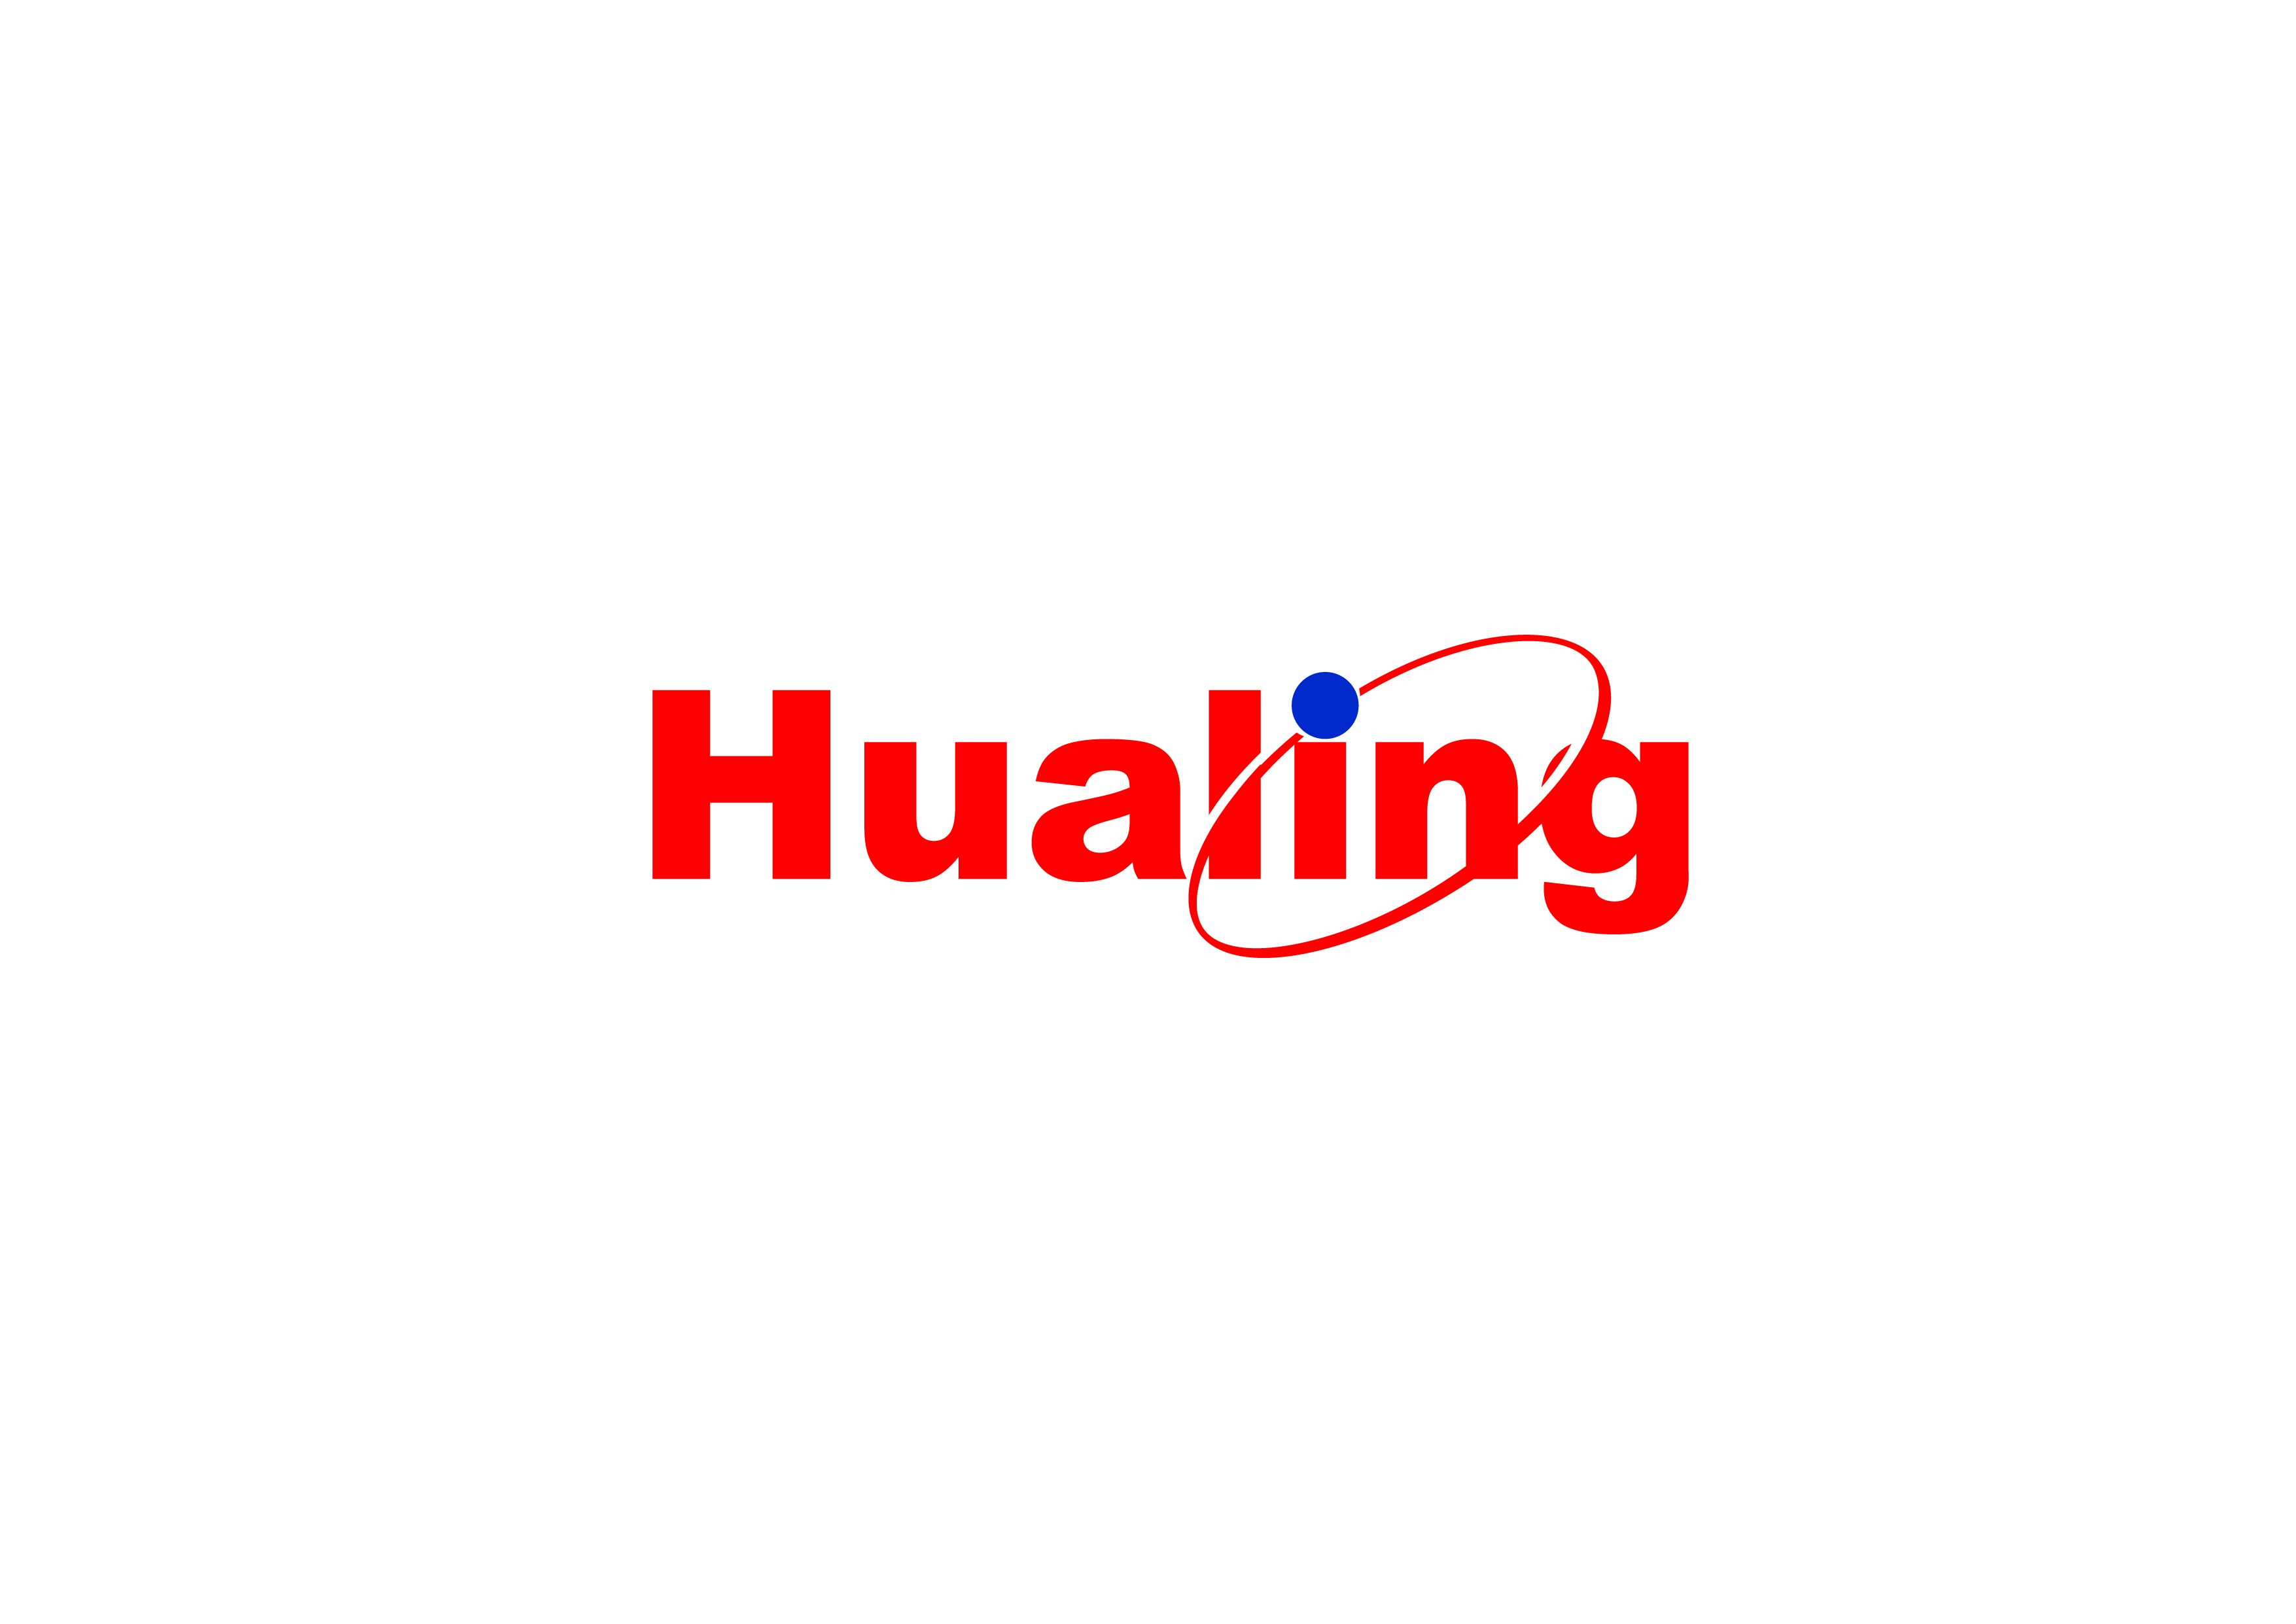 Hualing